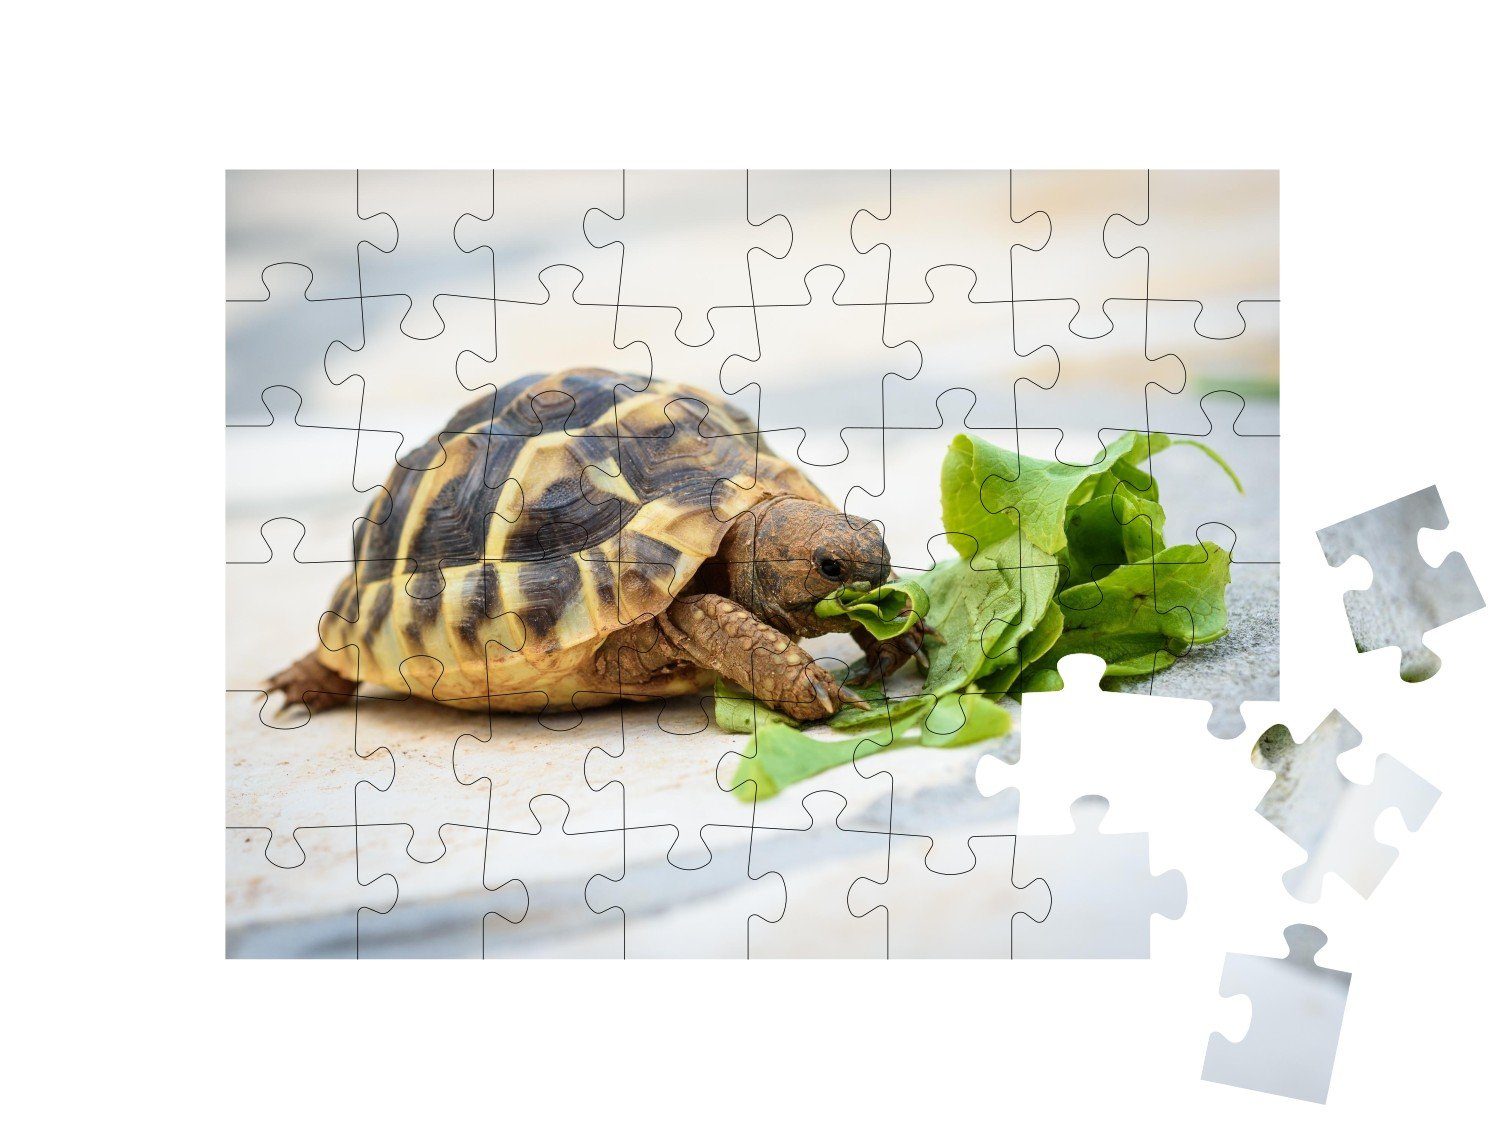 Wassertiere & Meeresschildkröten, Puzzle 48 Puzzleteile, bei Fische puzzleYOU-Kollektionen ihrer Salat-Mahlzeit, Haustierschildkröte puzzleYOU